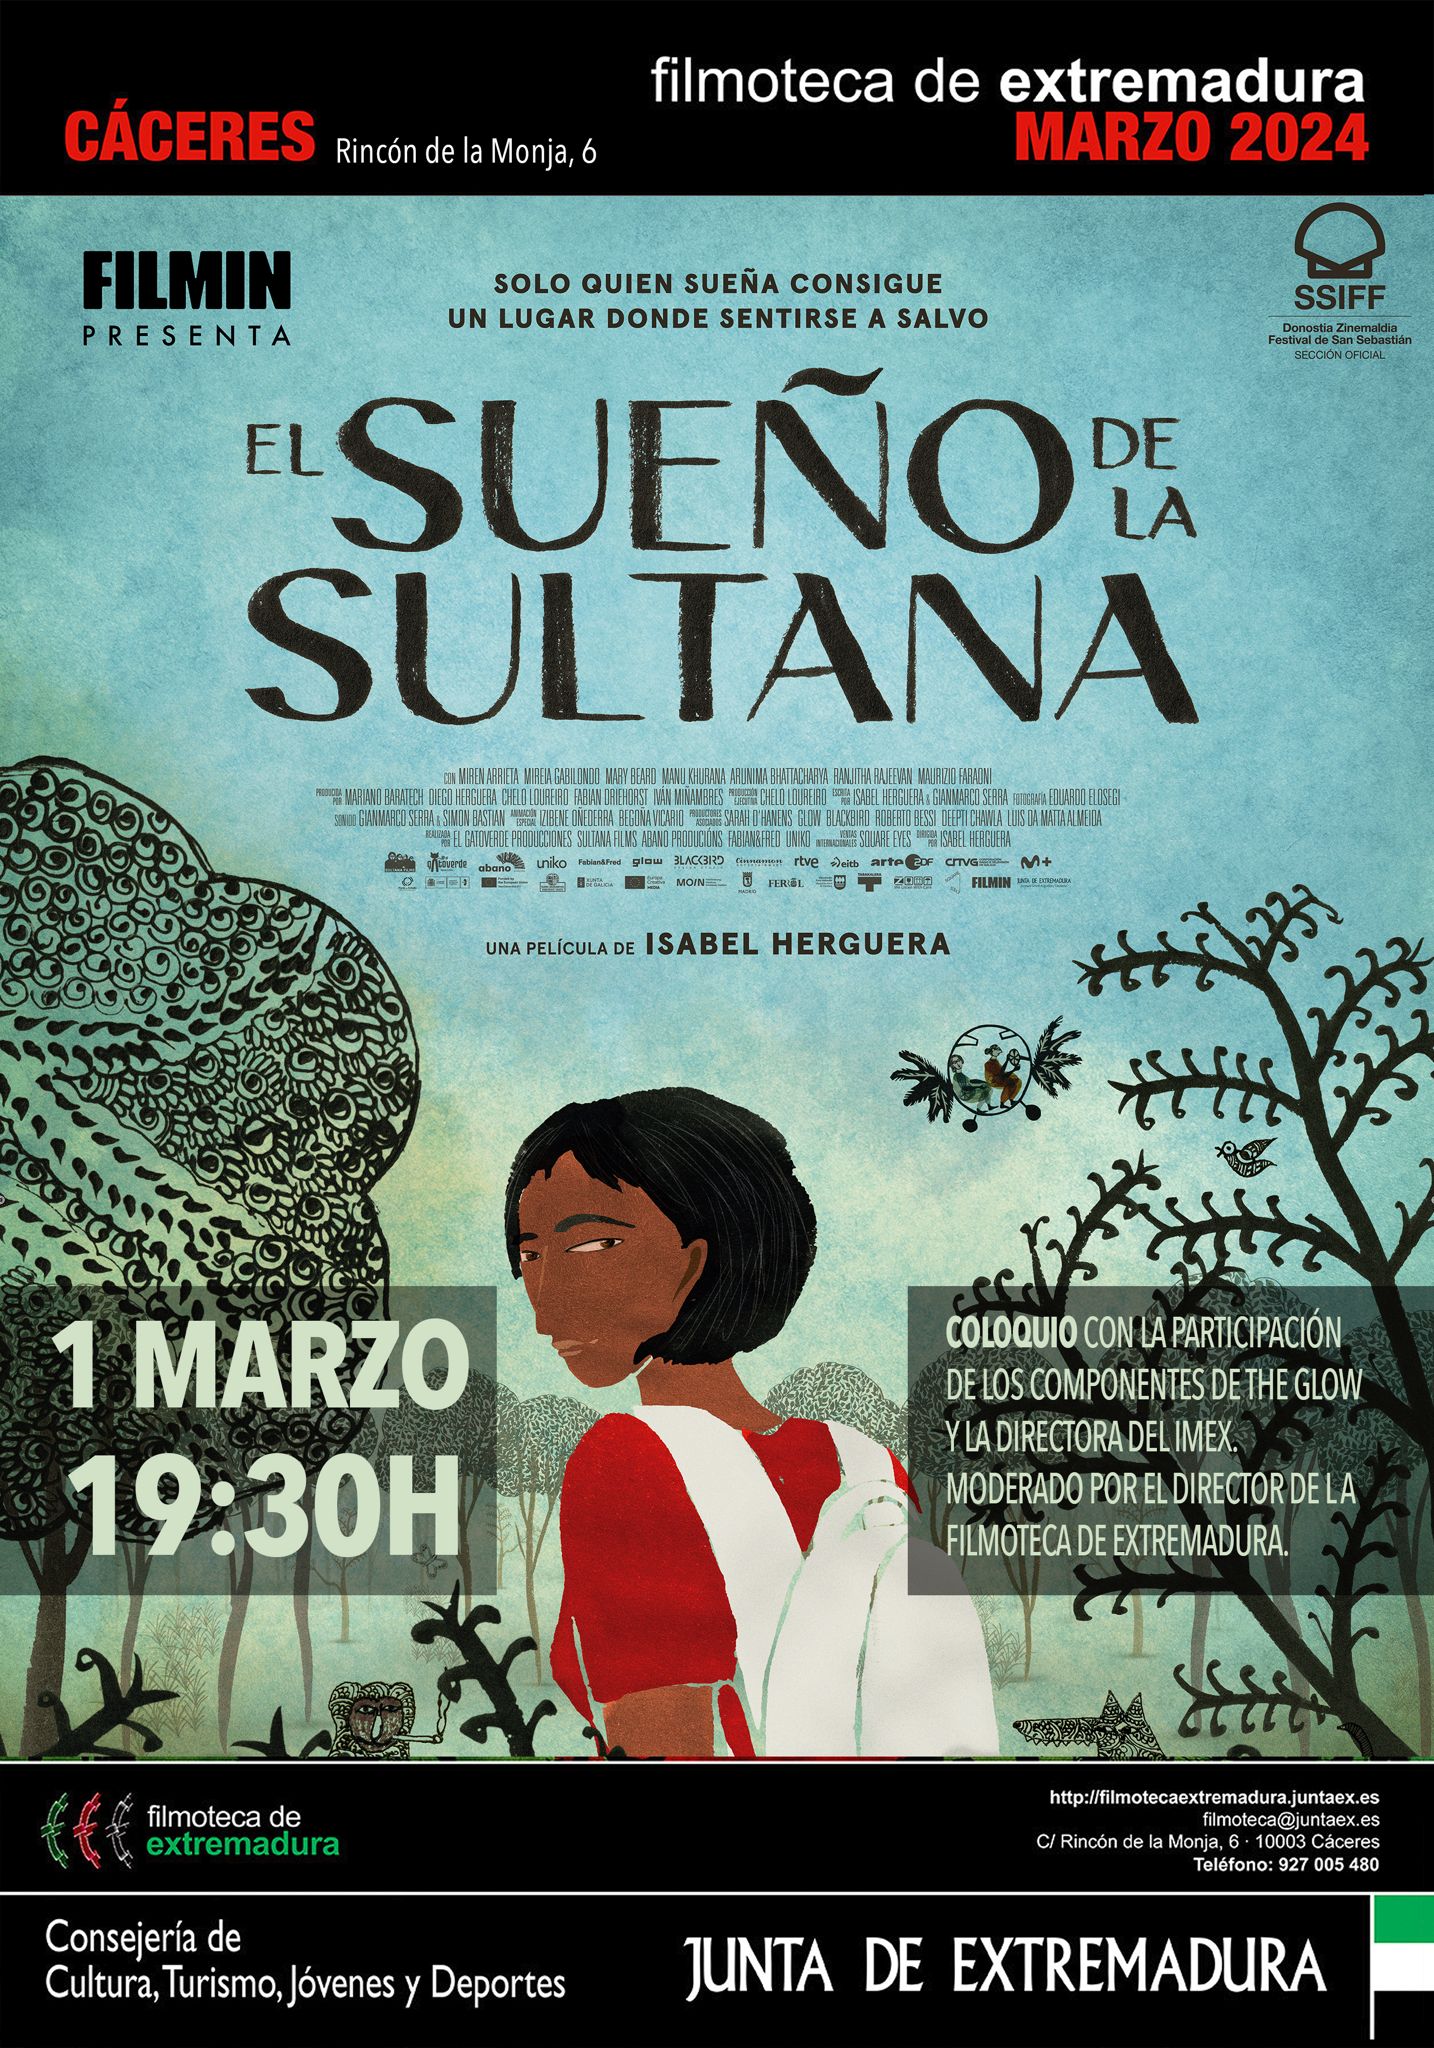 Image 1 of article La Filmoteca de Extremadura organiza la exposición 'El arte del Sueño de la Sultana' con grabados de la directora de la película